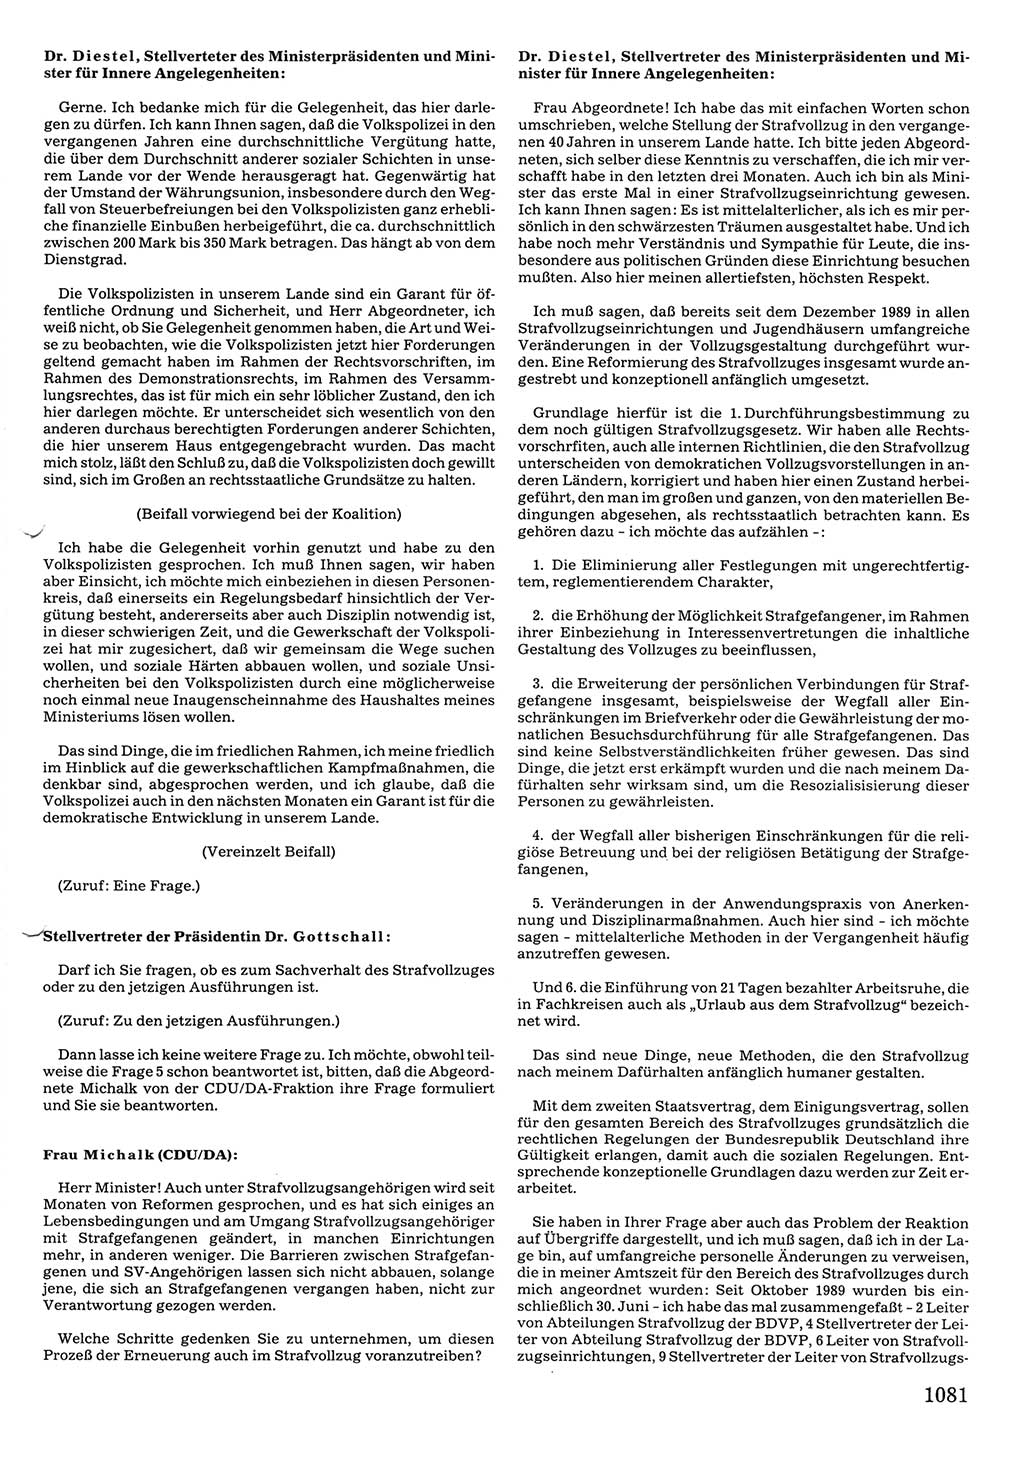 Tagungen der Volkskammer (VK) der Deutschen Demokratischen Republik (DDR), 10. Wahlperiode 1990, Seite 1081 (VK. DDR 10. WP. 1990, Prot. Tg. 1-38, 5.4.-2.10.1990, S. 1081)